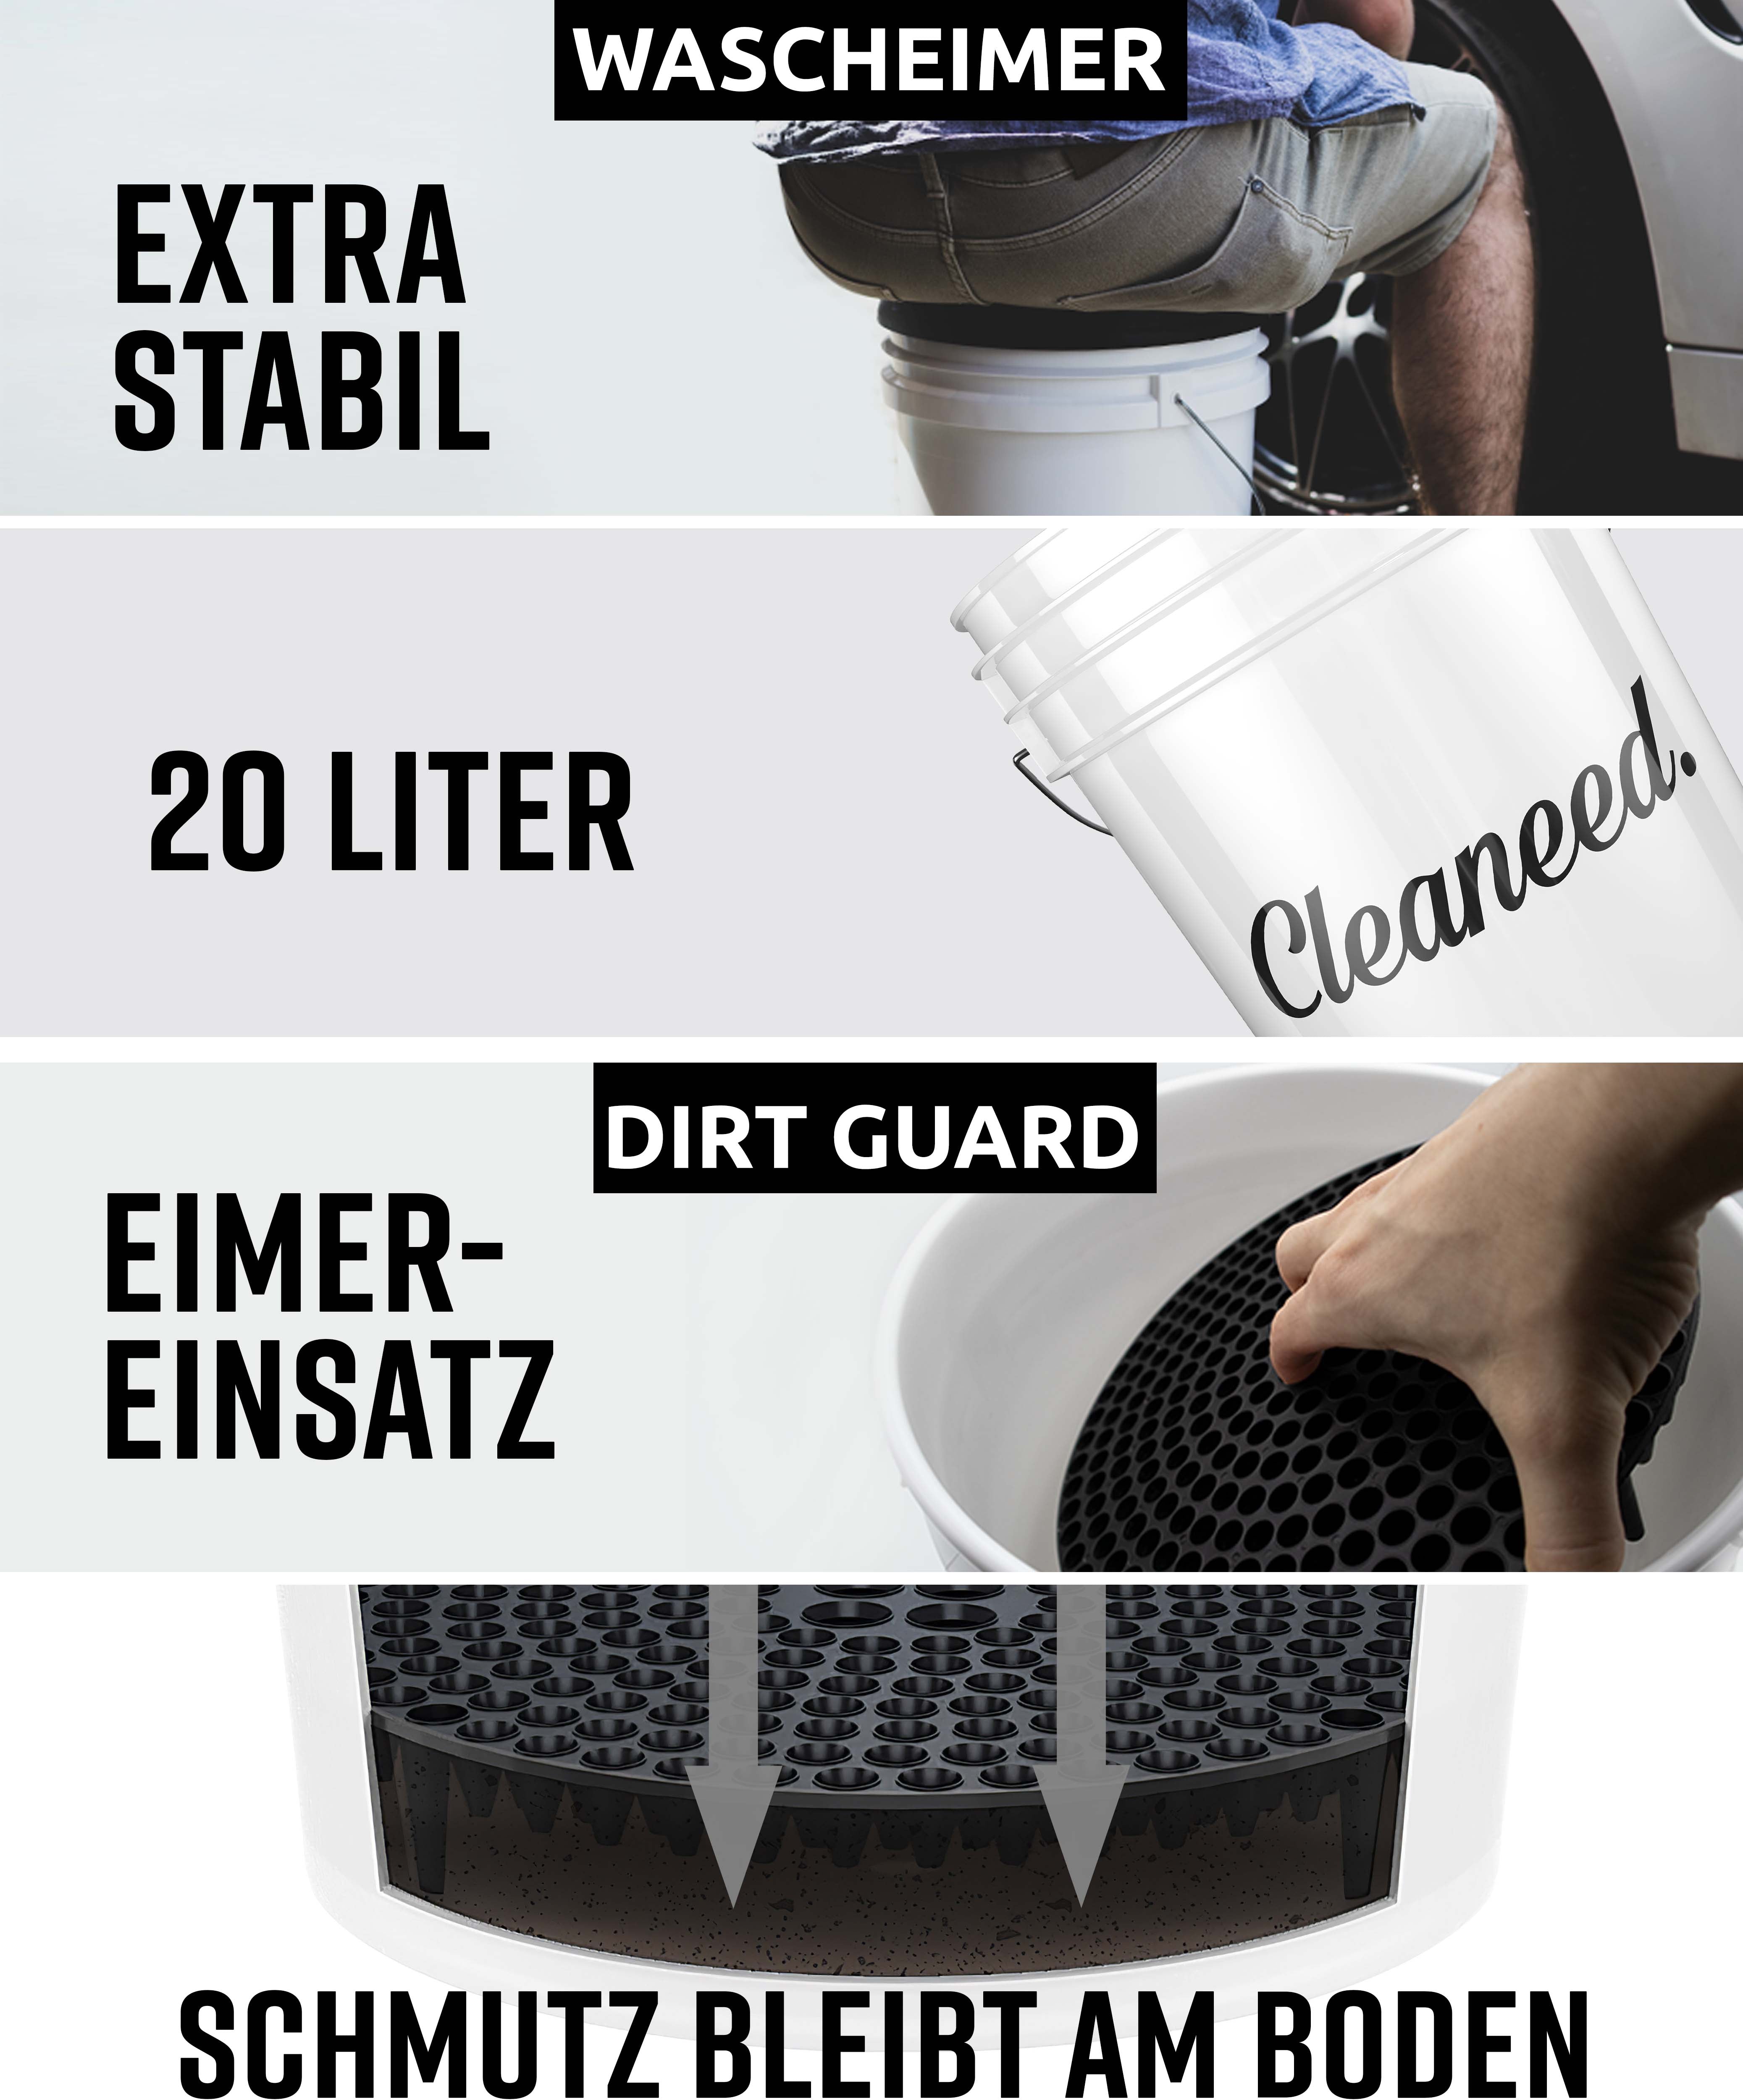 Cleaneed PREMIUM Starterset – Ideales Einsteiger Autopflege Set – Alles für  die Reinigung und Pflege deines Autos - Auto Waschset, Auto Putz Set